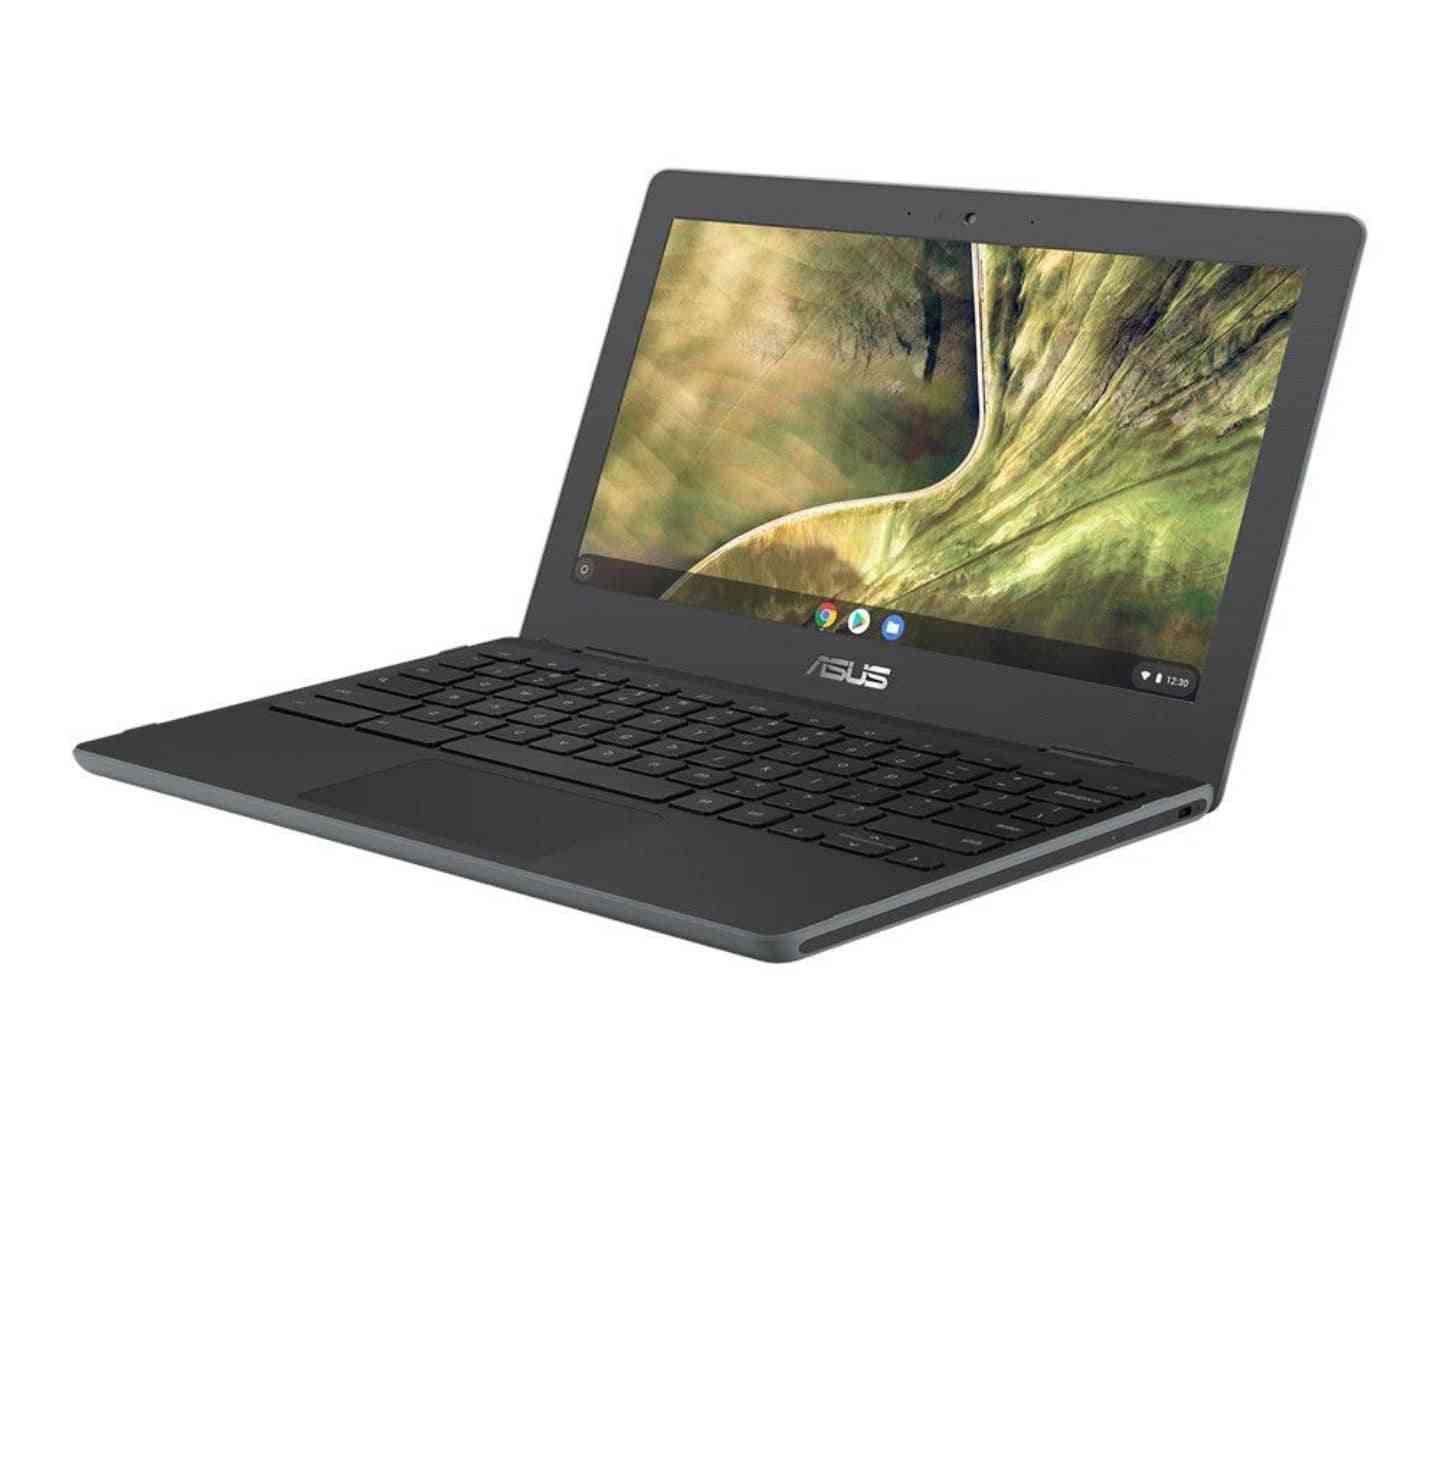 Asus Chromebook Celeron N4020 4GB 32GB 11.6" HD Notebook - Grey
Celeron N4020 | 4GB | 32GB eMMC | 11.6" HD | Chrome OS - Tech Tavern